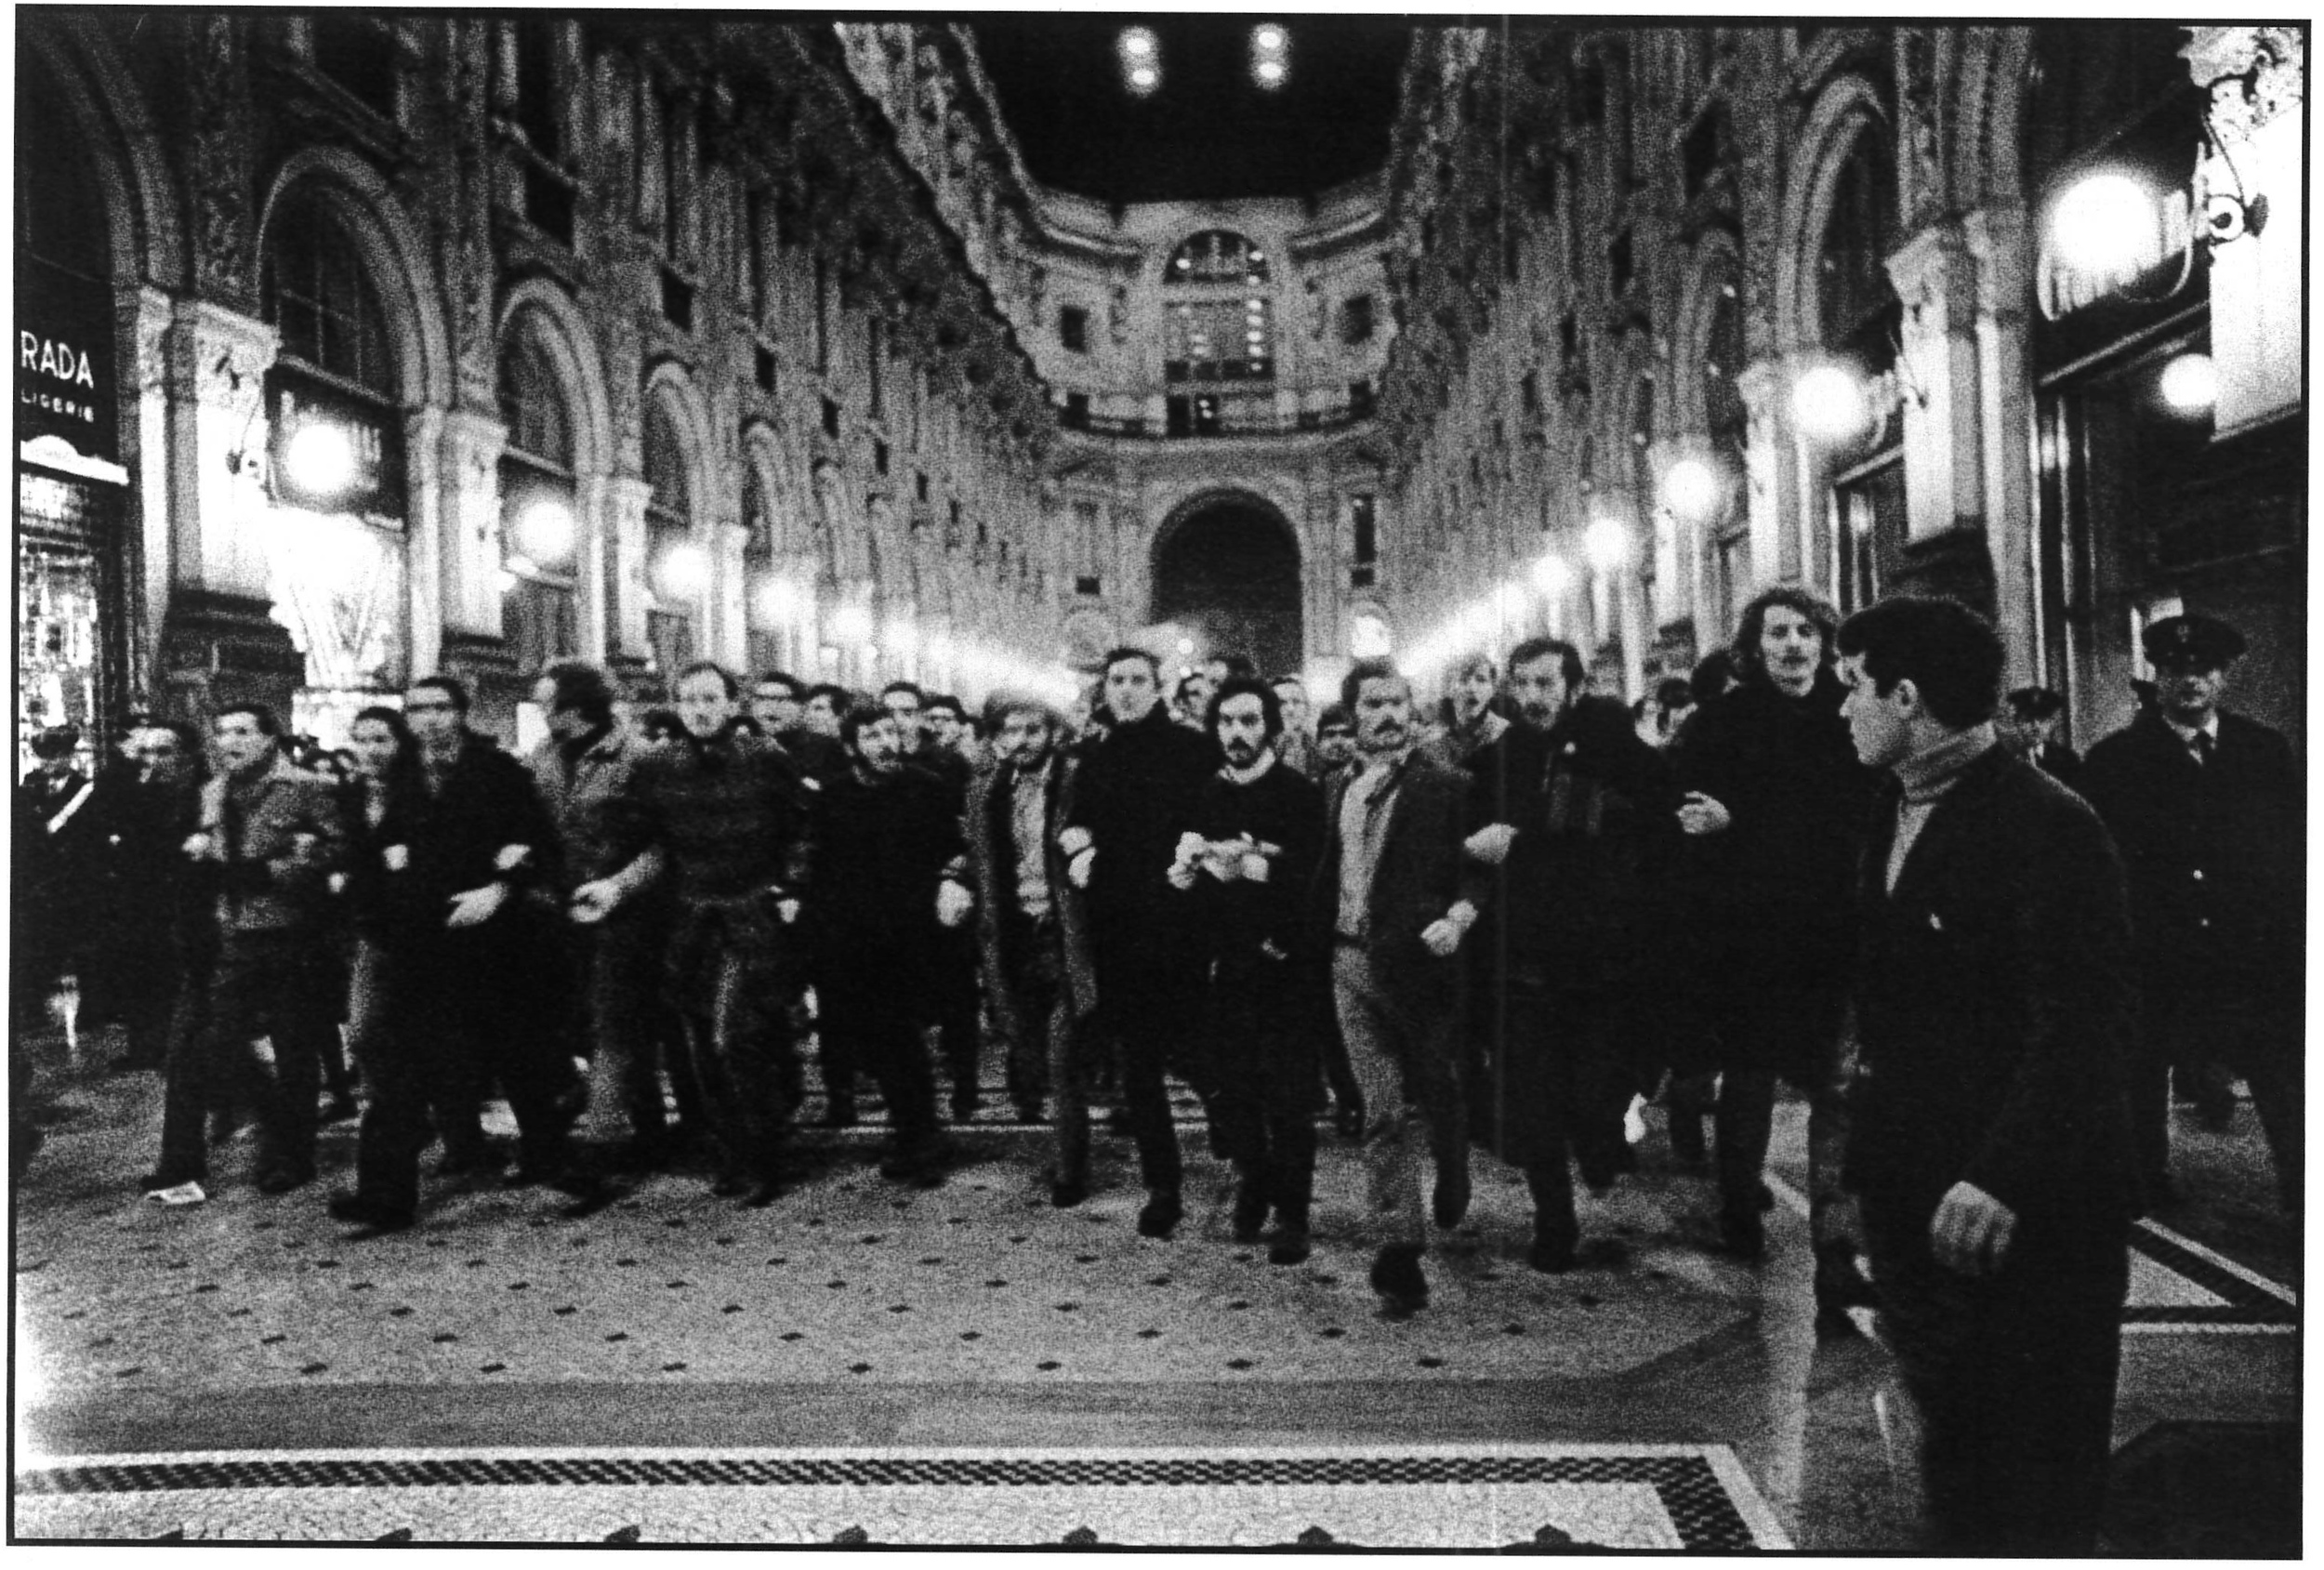   Galleria Vittorio Emanuele, manifestazione studentesca. Milano, 1968.  